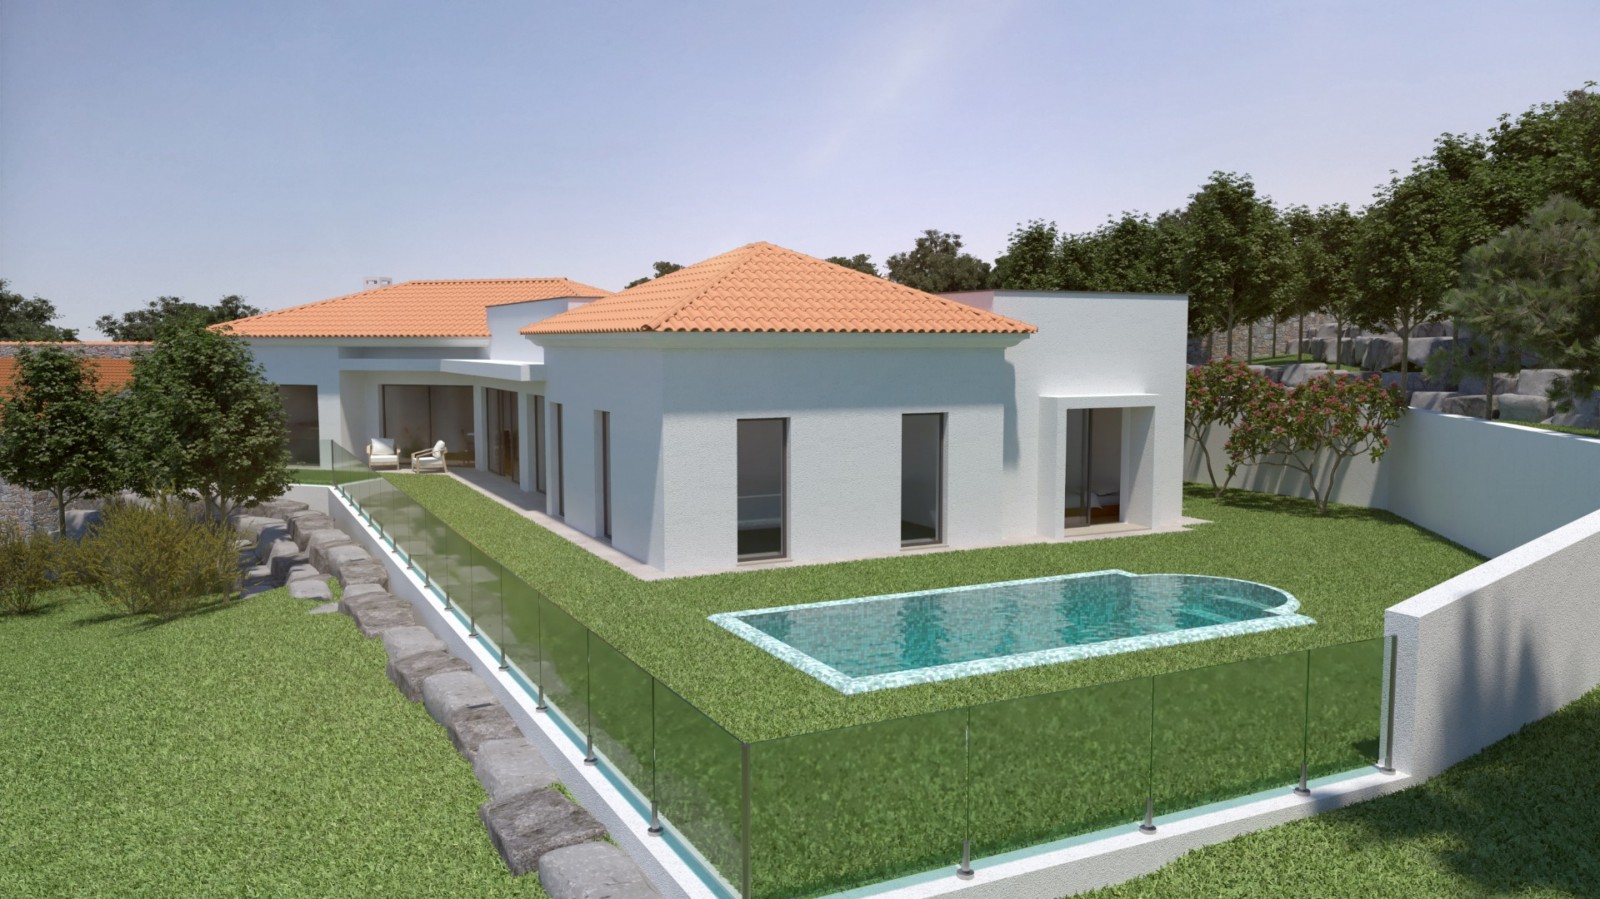 Terreno para construção de moradia T3, para venda, em Silves, Algarve_205000